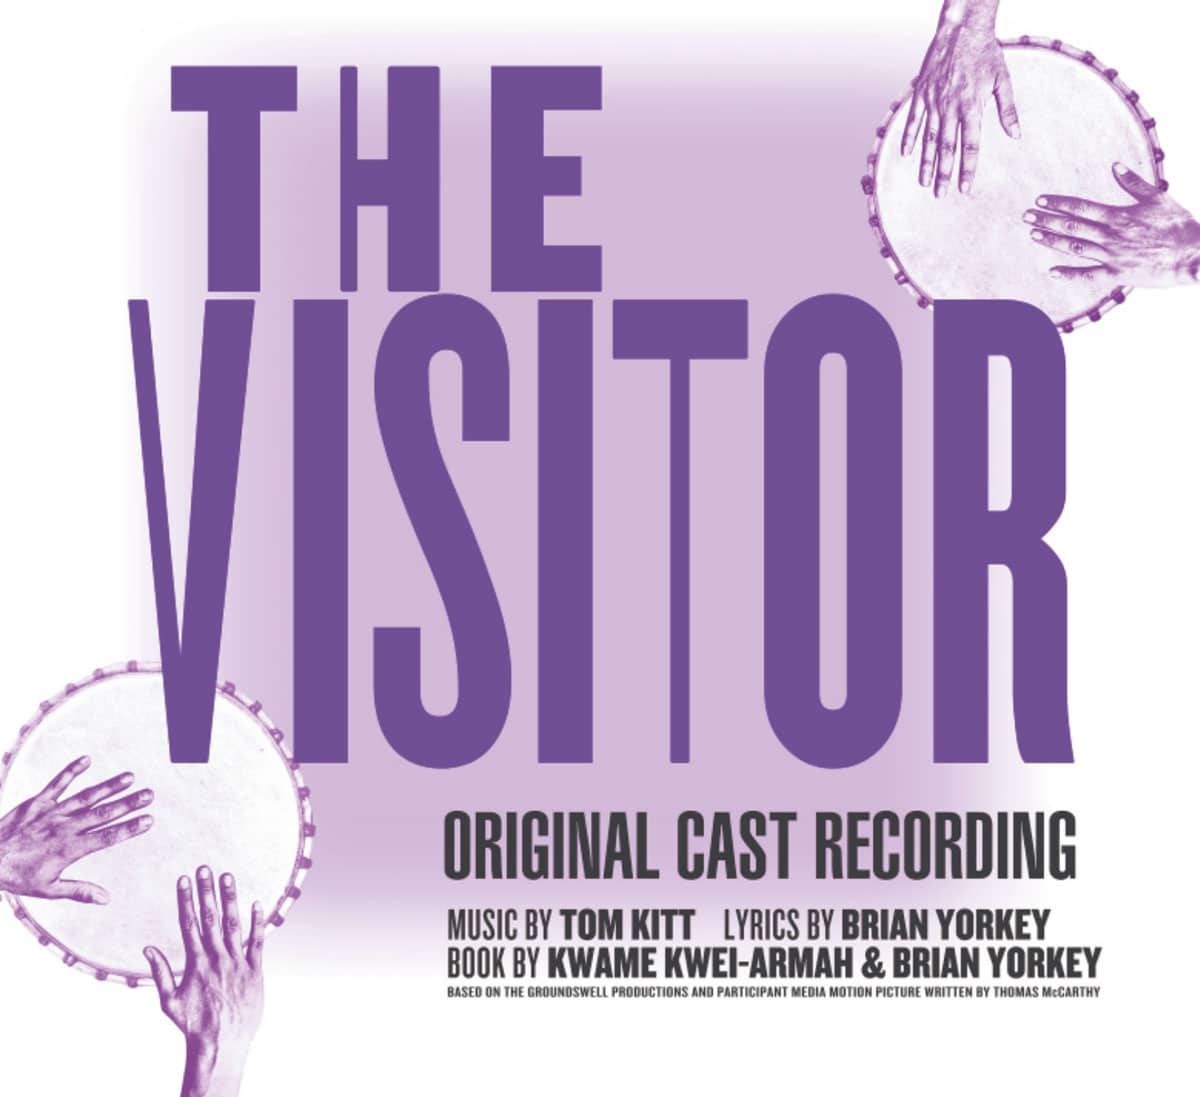 トム・キット作のブロードウェイオリジナルスコア『THE VISITOR（ORIGINAL CAST RECORDING OF）』